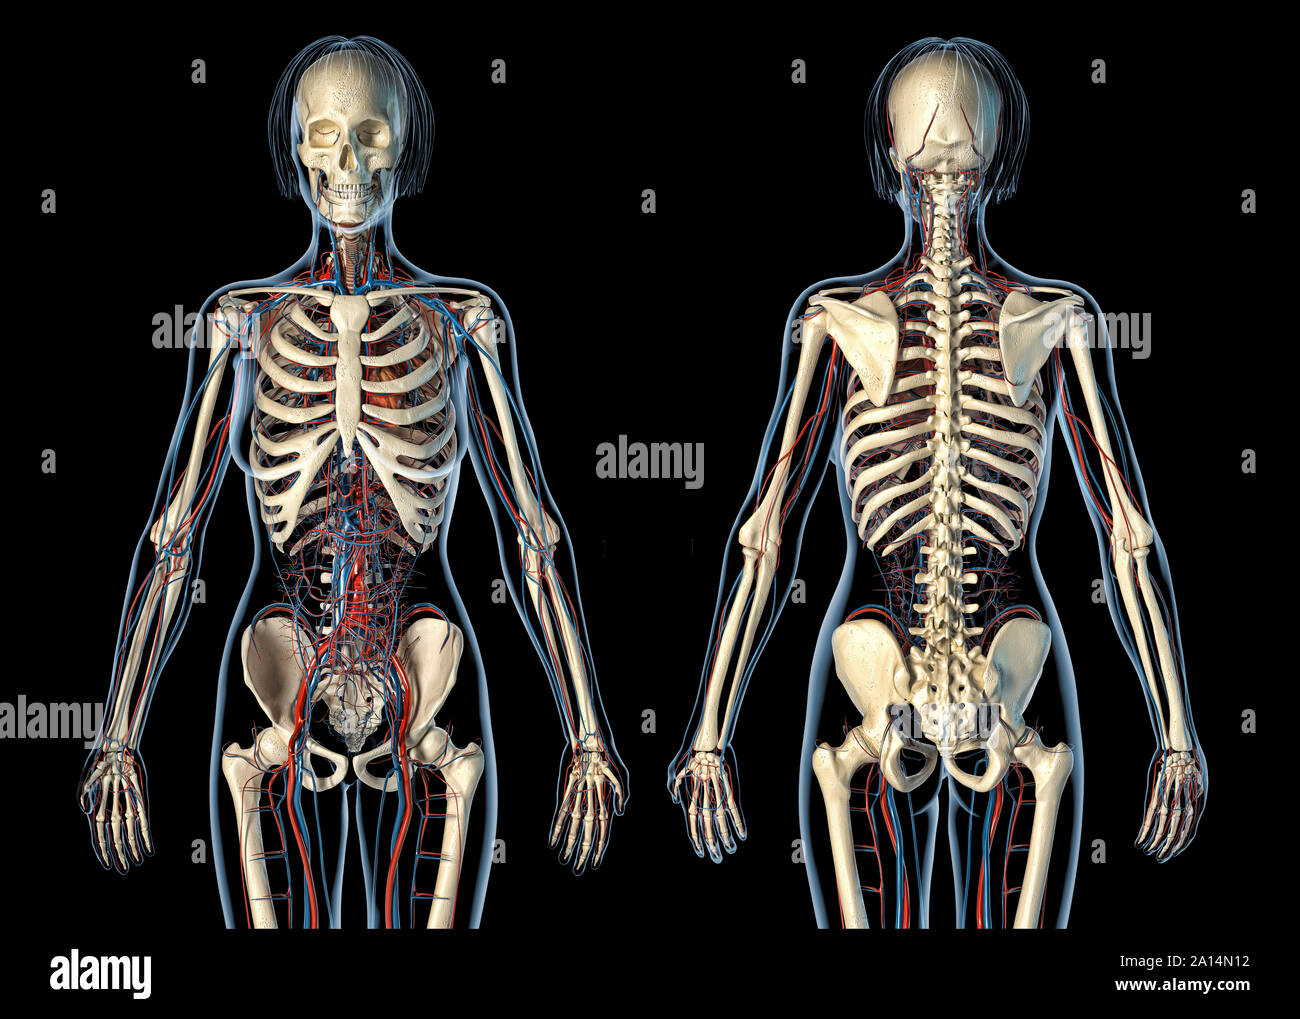 Anatomia femminile del sistema cardiovascolare con scheletro, posteriore e viste frontali. Foto Stock